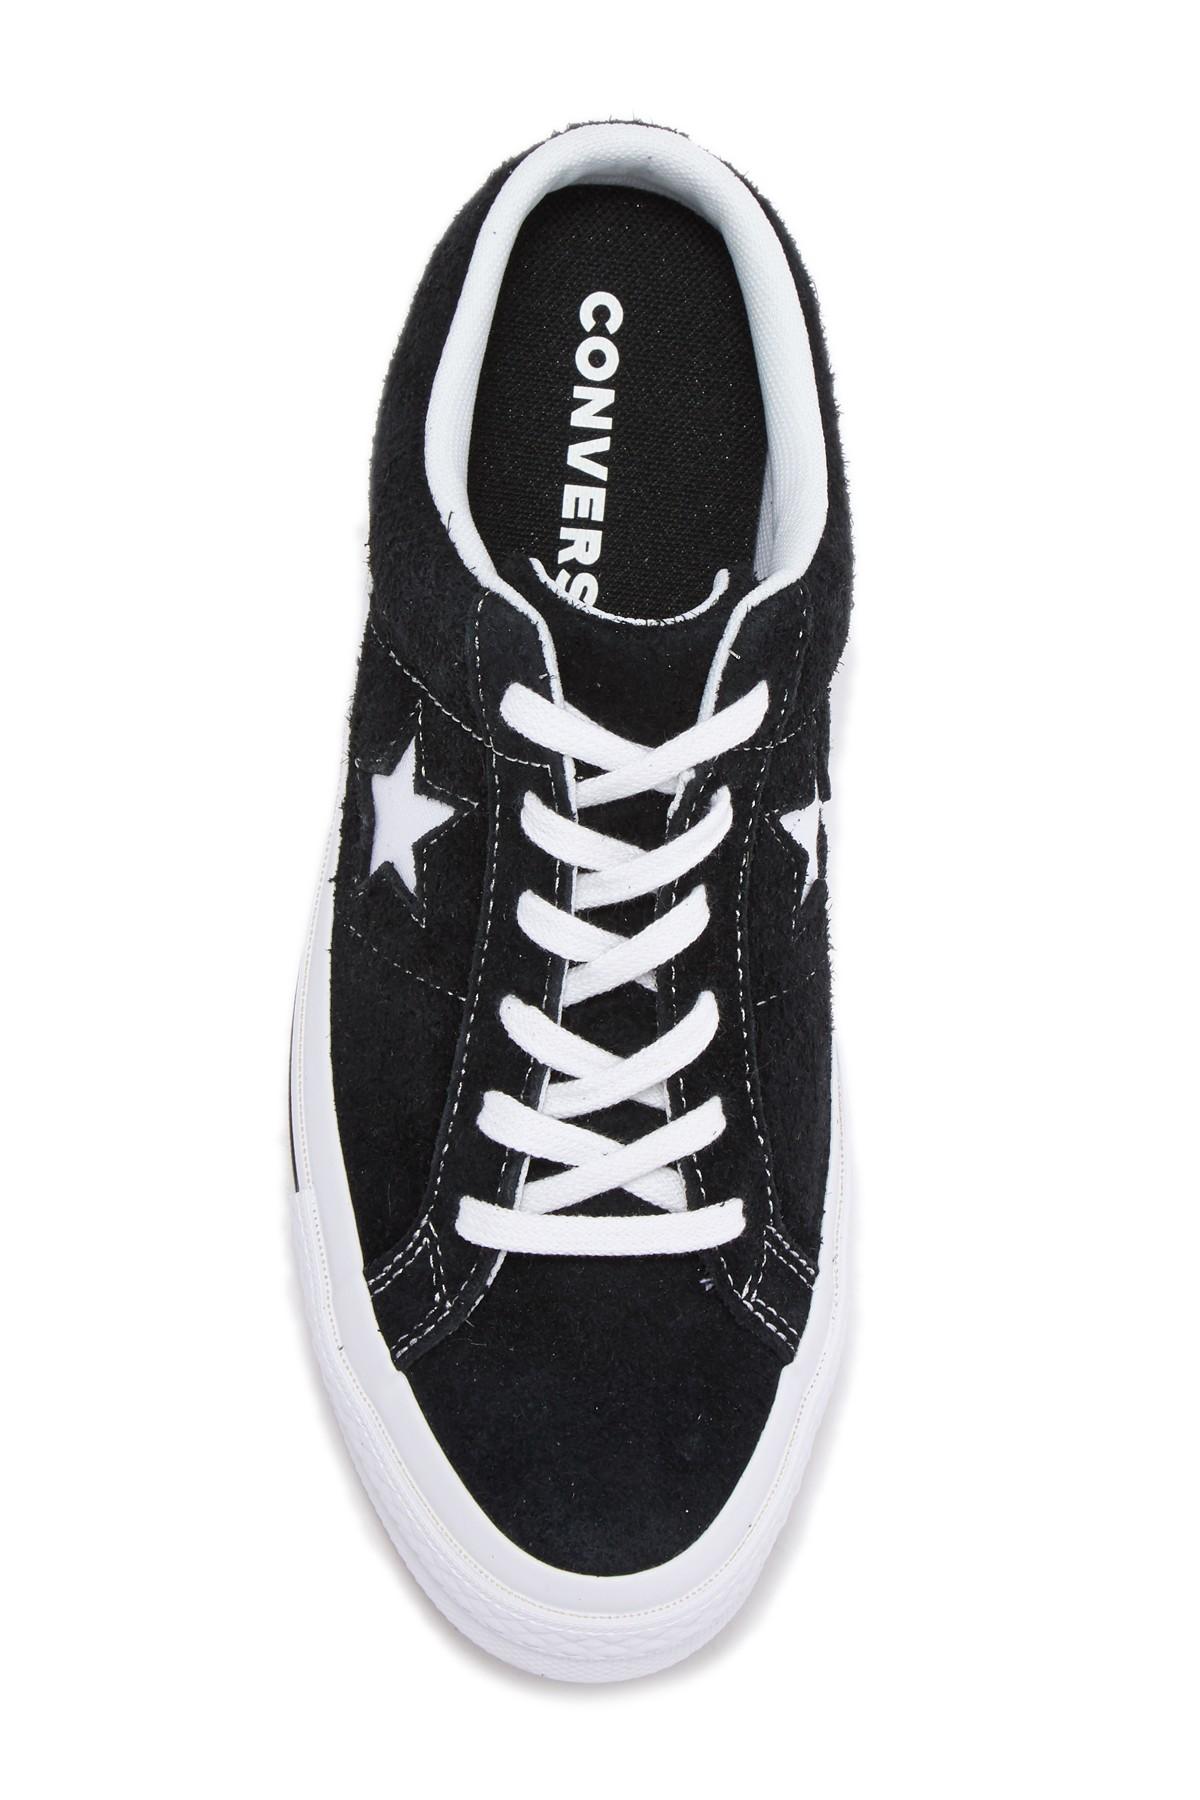 Converse One Star Mule Slip-on Sneaker (unisex) in Black | Lyst